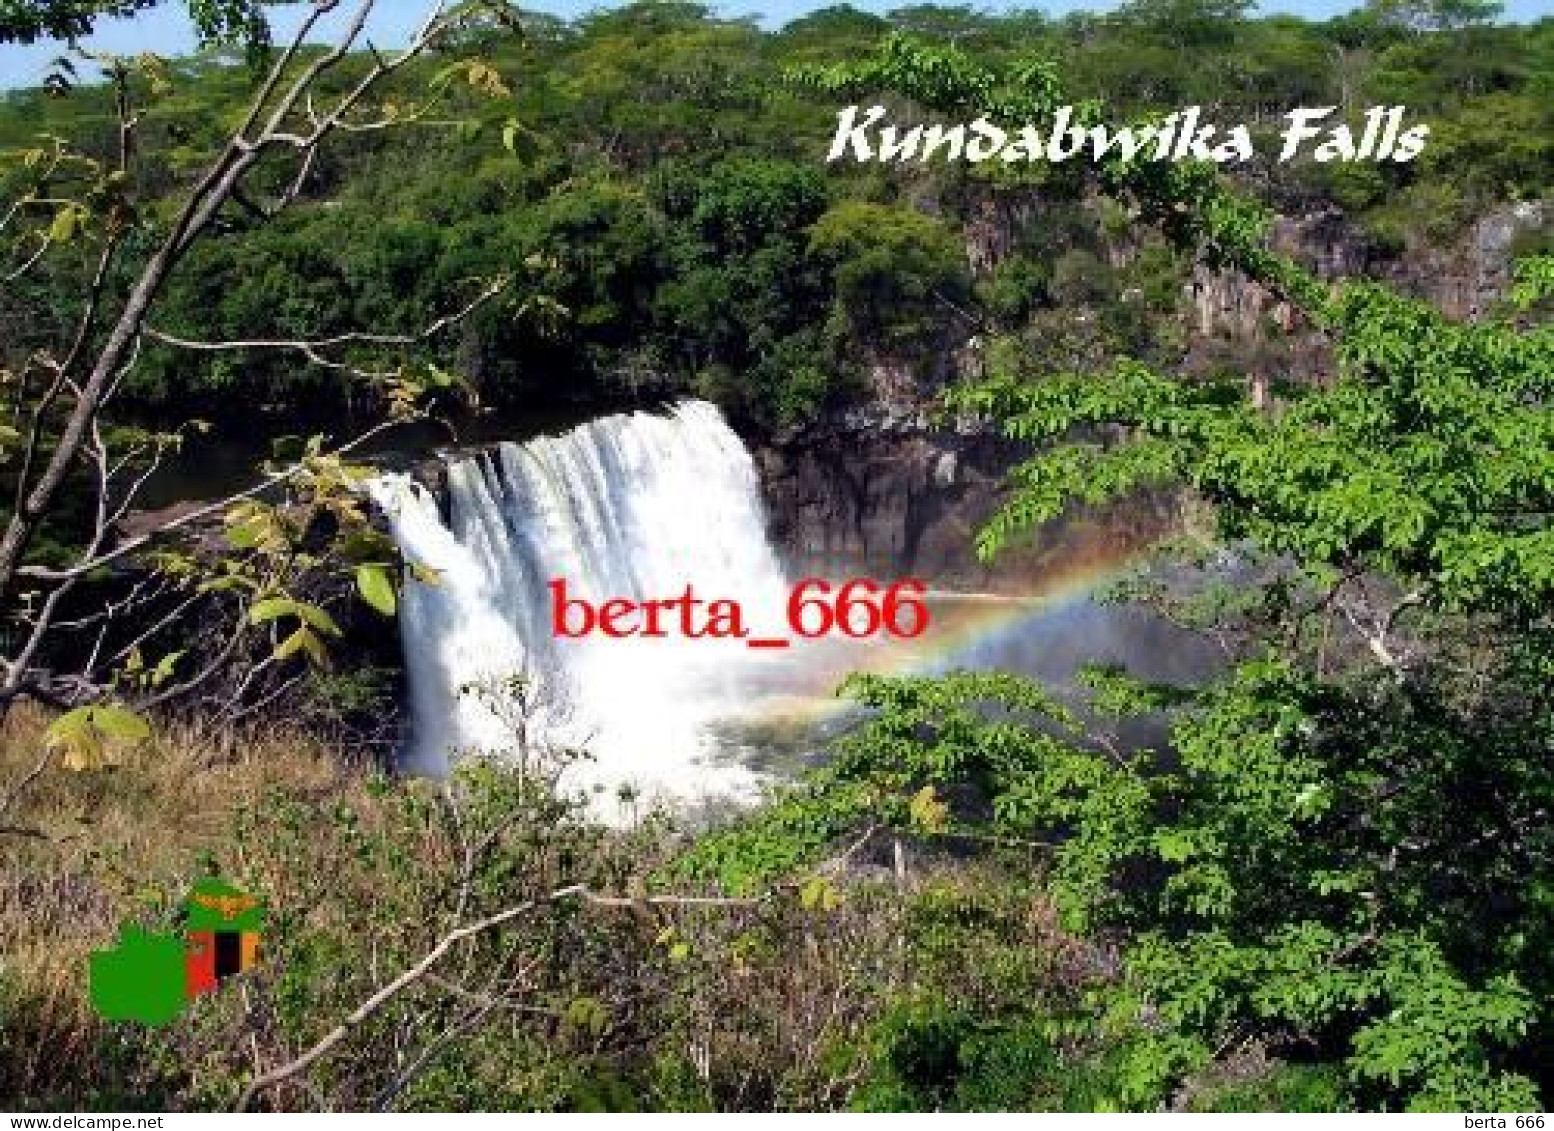 Zambia Kundabwika Falls New Postcard - Zambie